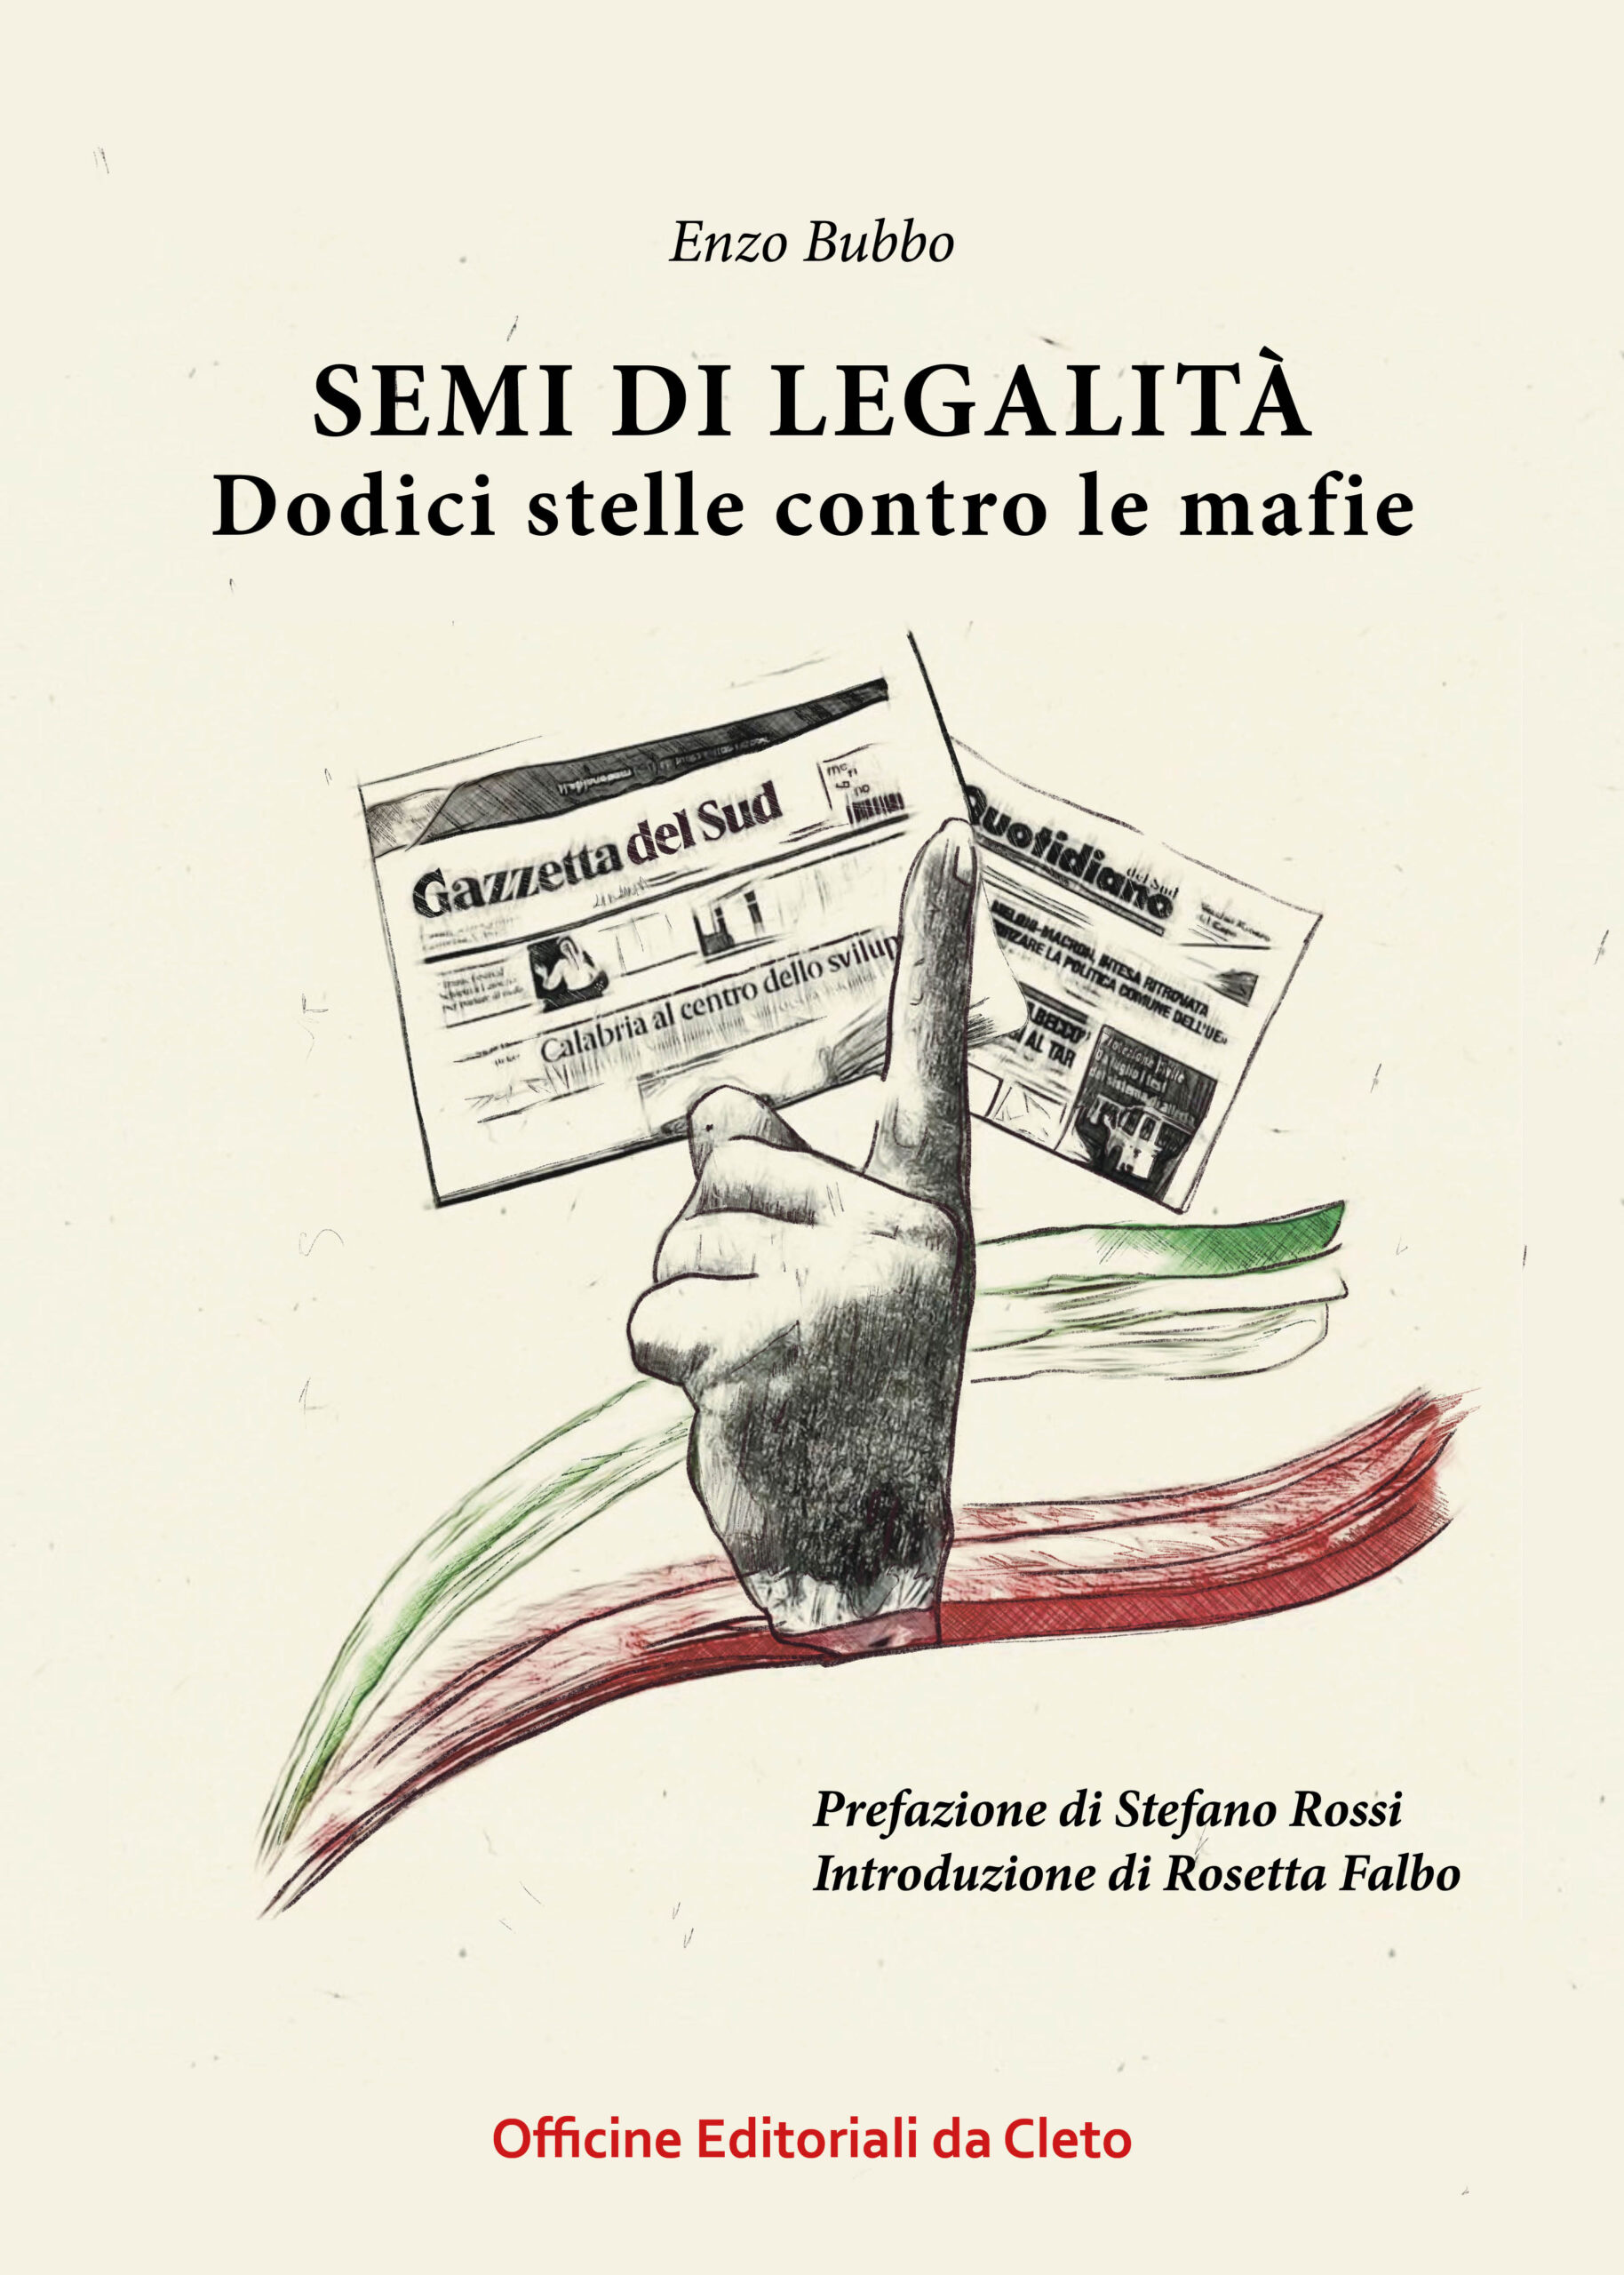 La copertina del libro dal titolo Semi di legalità